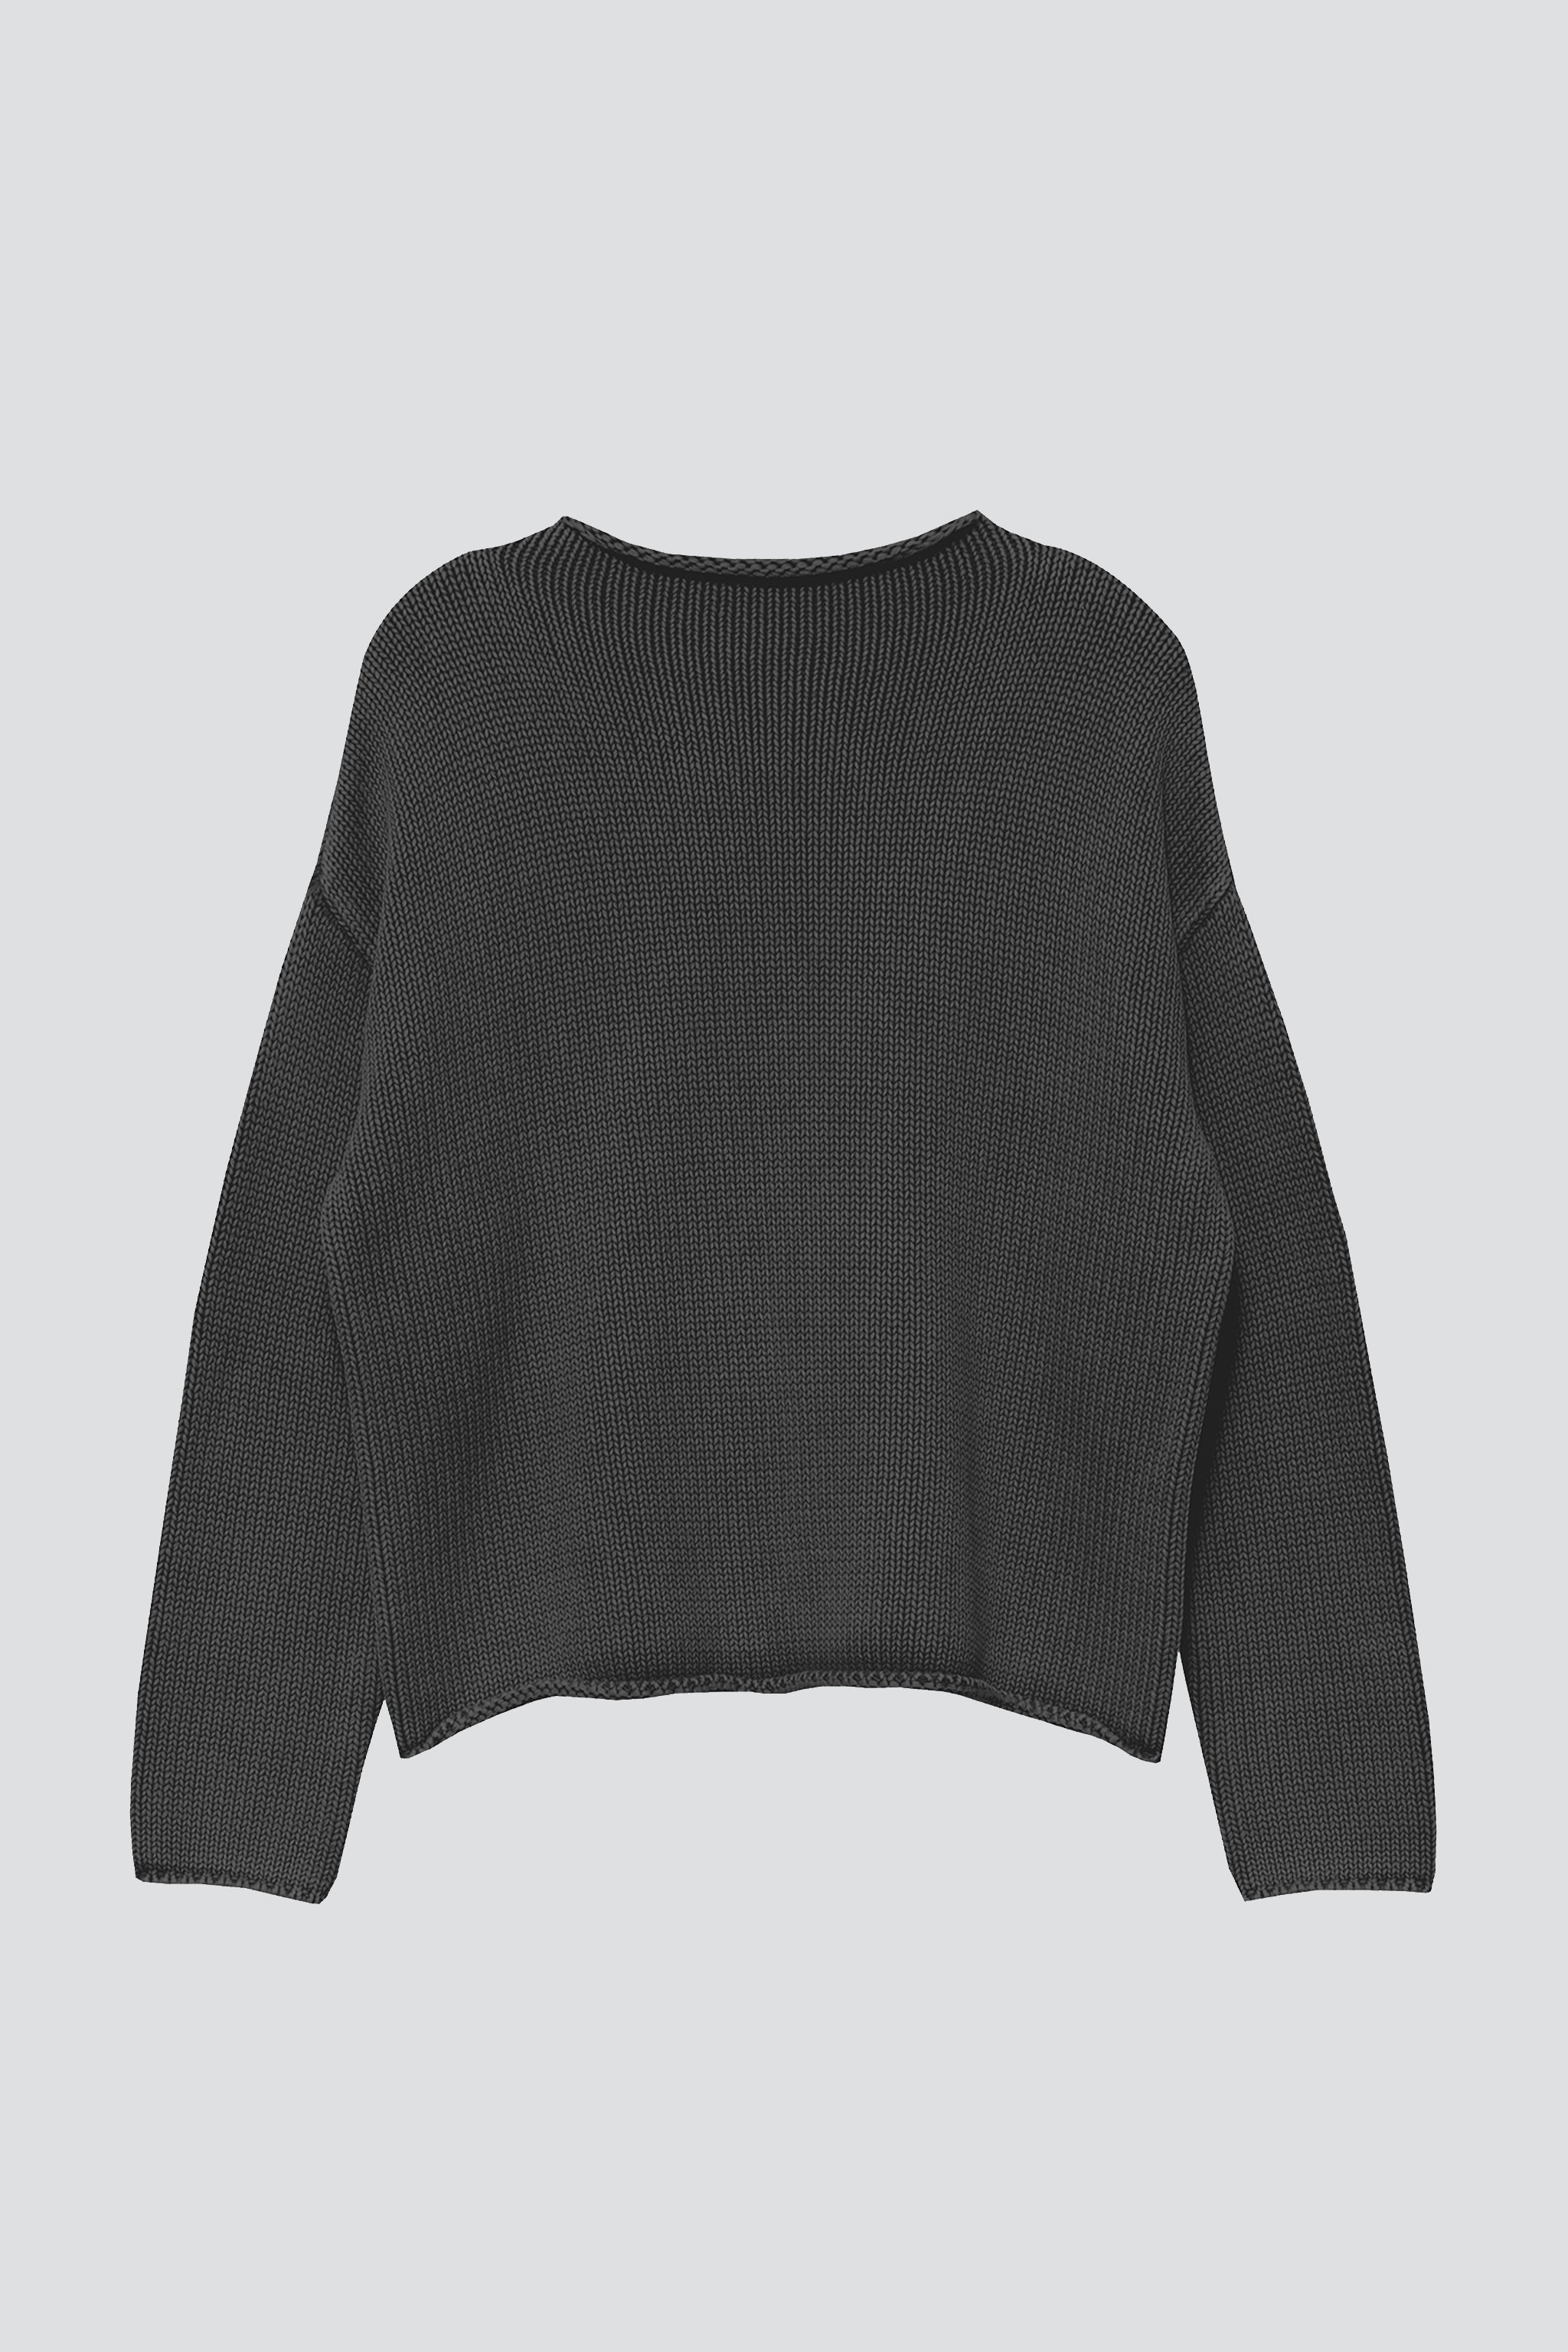 Lamis Black Sweater